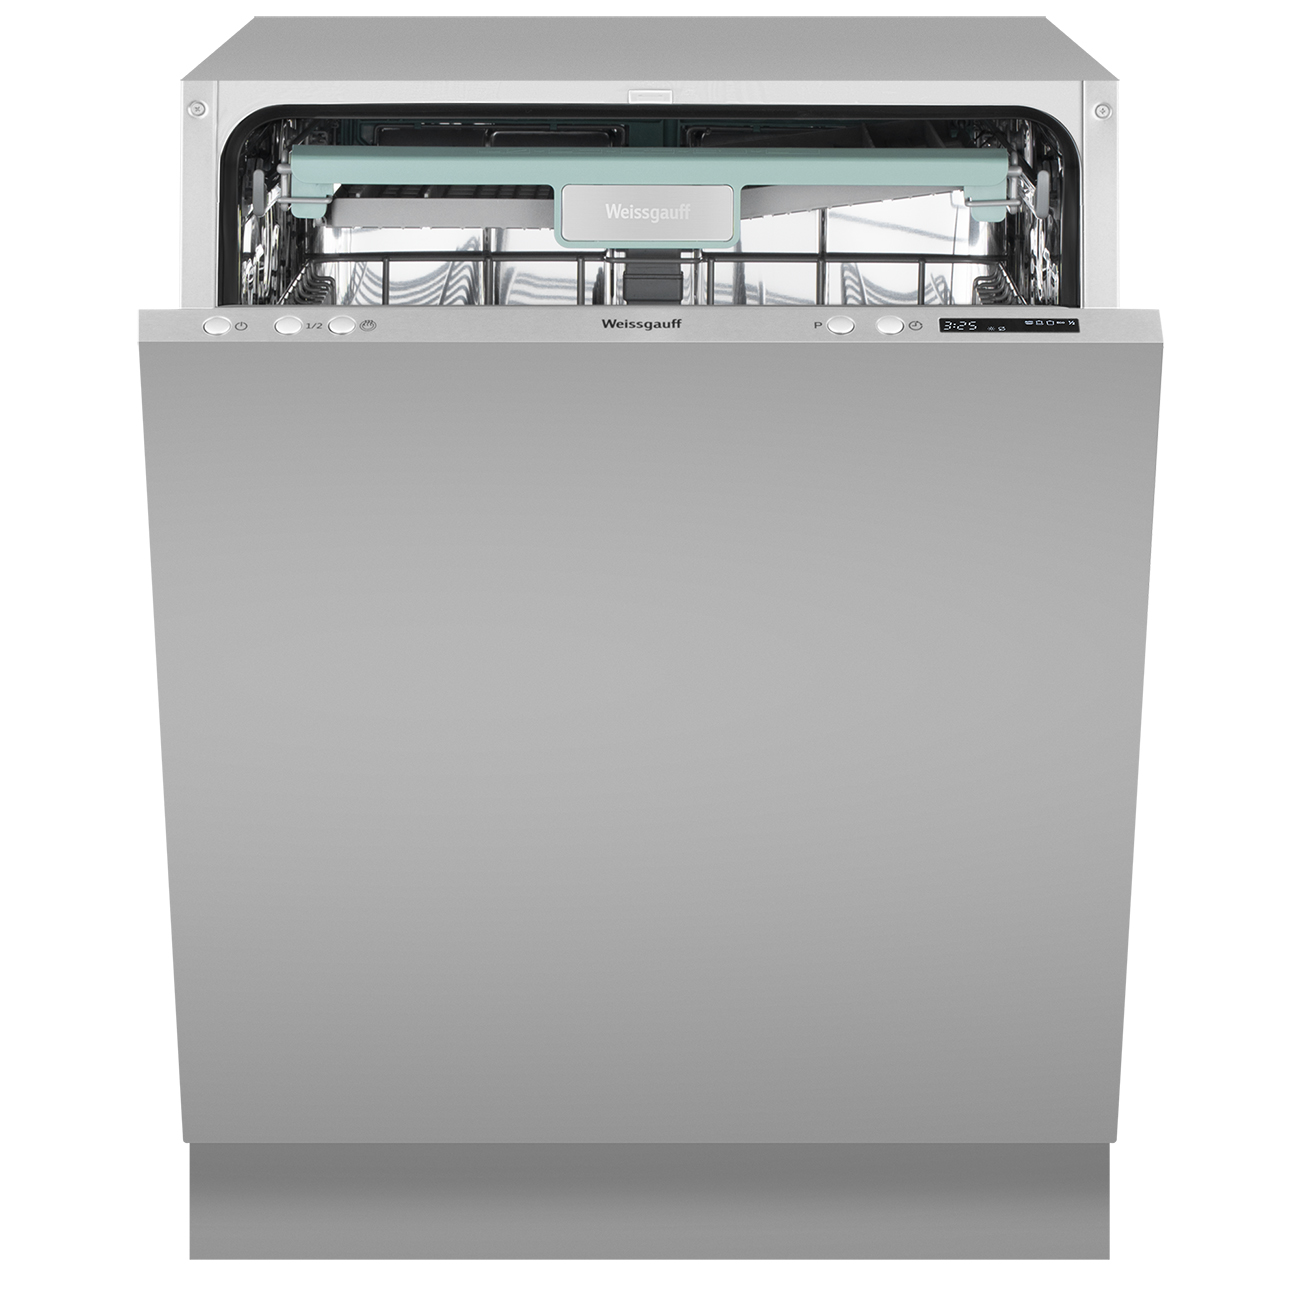 Встраиваемая посудомоечная машина Weissgauff BDW 6043 D встраиваемая посудомоечная машина weissgauff bdw 6043 d